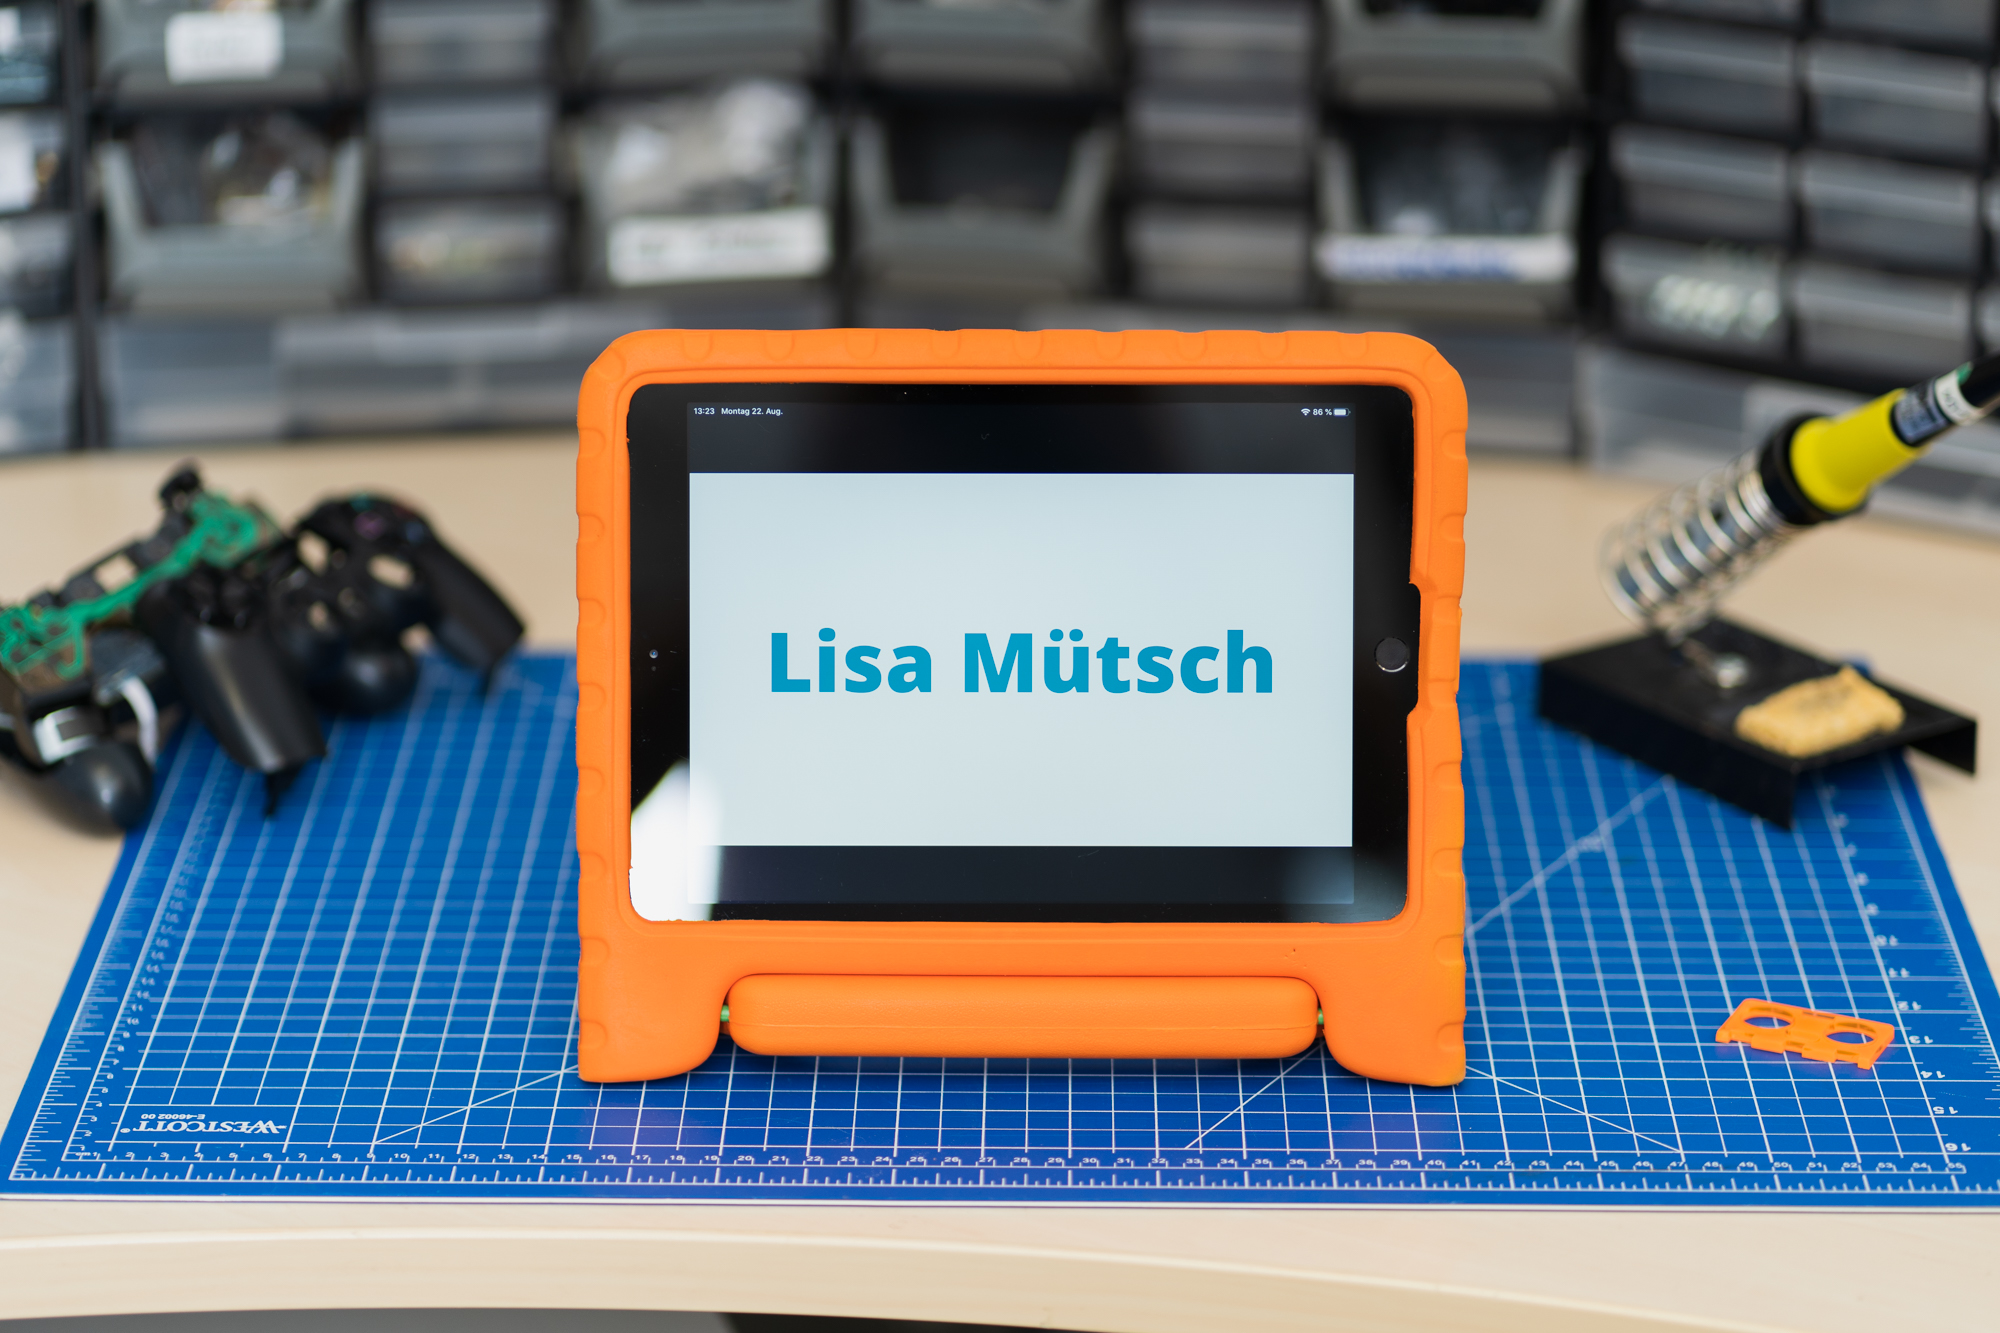 Zu sehen ist ein iPad auf einem Schreibtisch. Das iPad zeigt den Namen Lisa Mütsch.